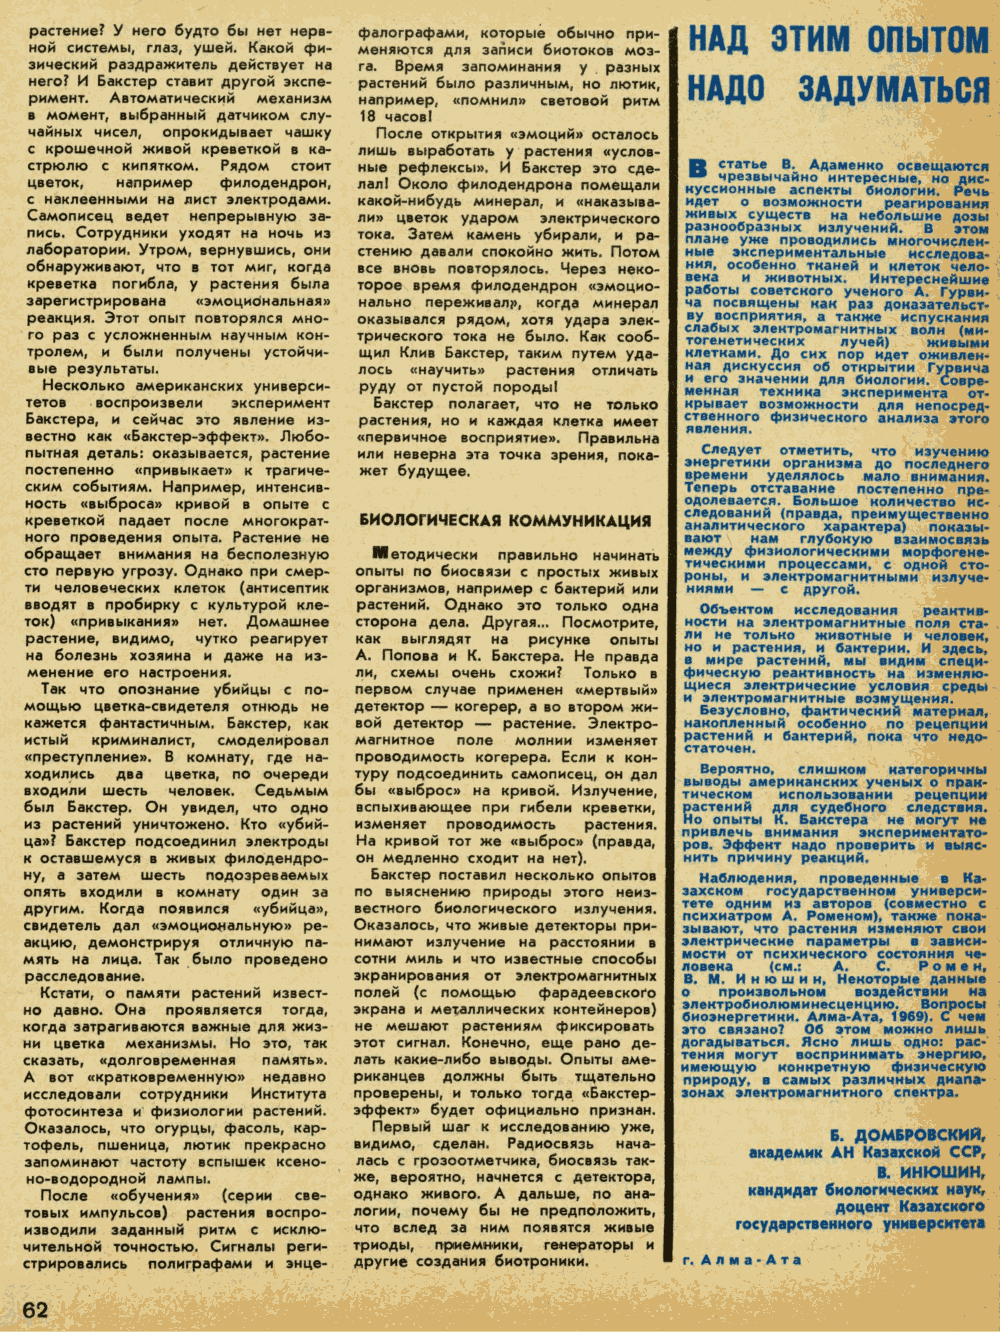 Живые детекторы. В. Адаменко. Техника — Молодёжи, 1970, №8, с.60-62. Фотокопия №3